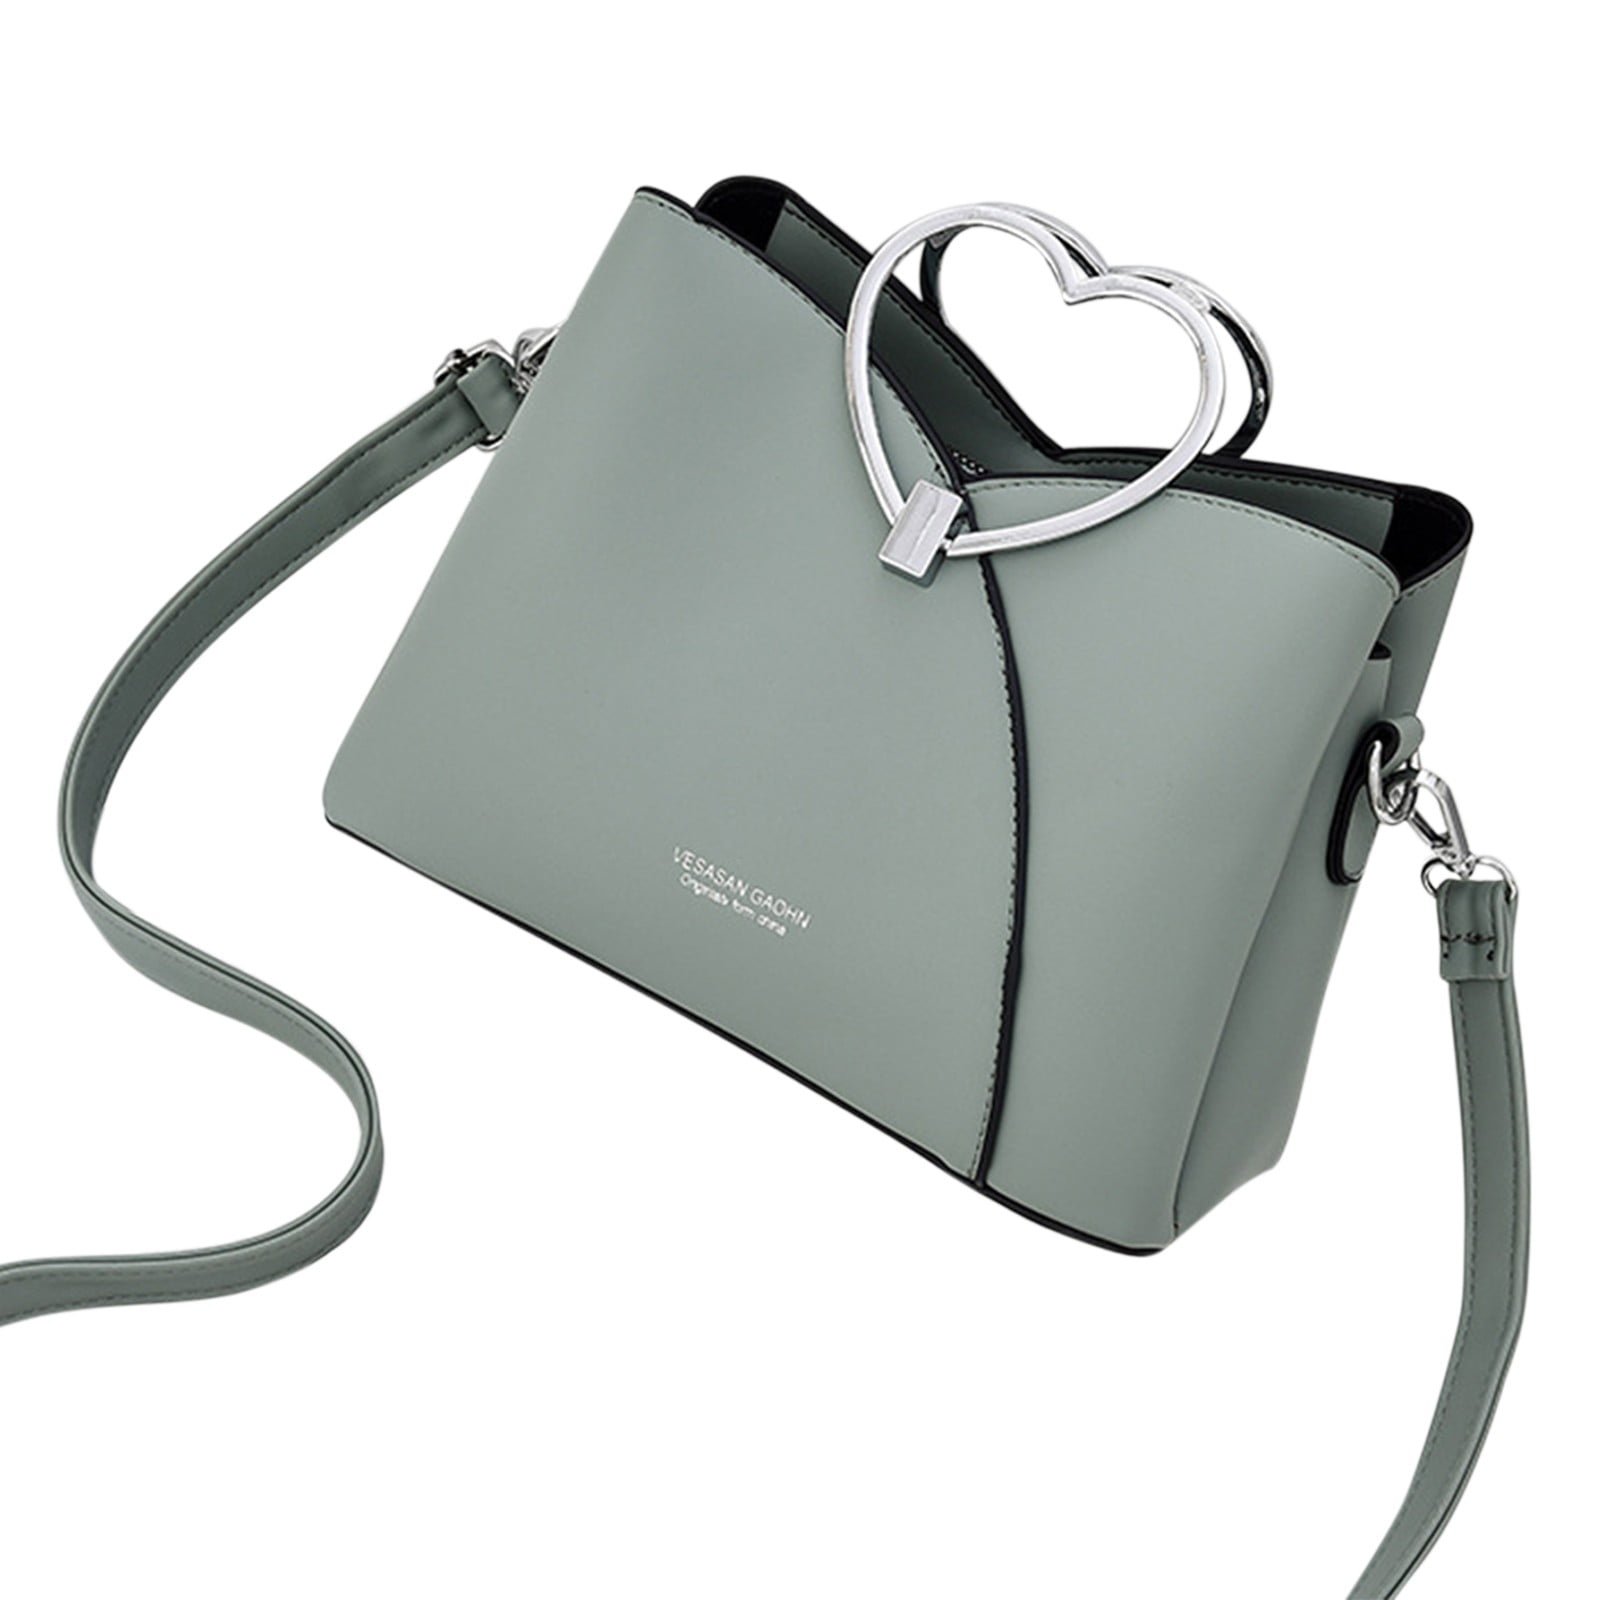 Fall Handbags I'm Loving from Amazon - Cyndi Spivey | Trendy purses, Fall fashion  purse, Fall handbags